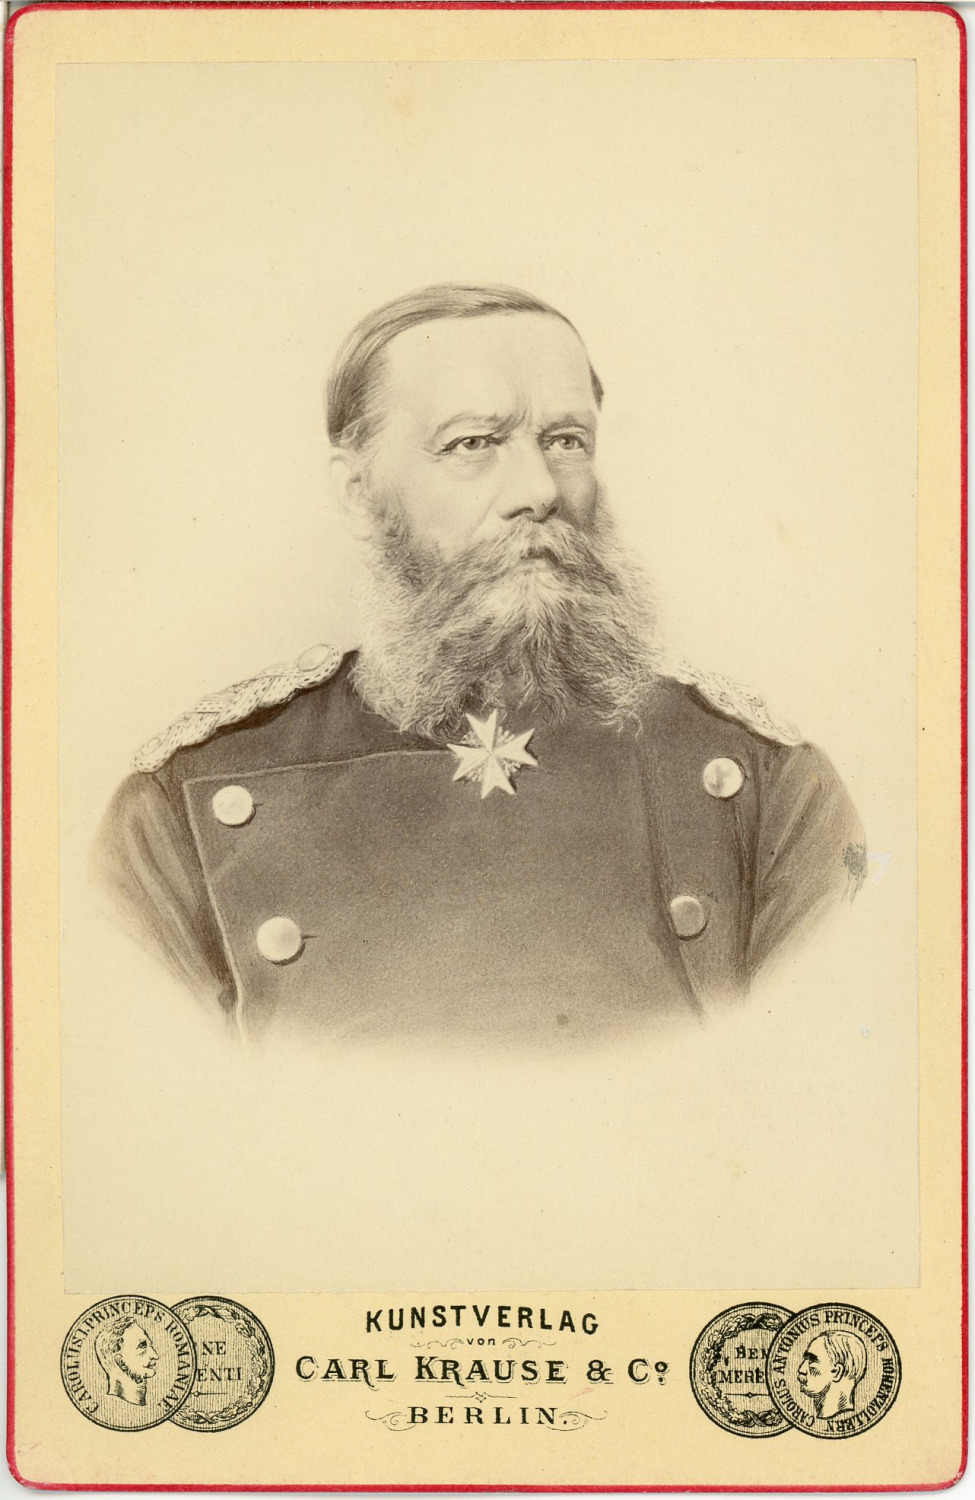 Carl Krause & Co., Berlin, Eduard Vogel von Falckenstein Governor General of the 